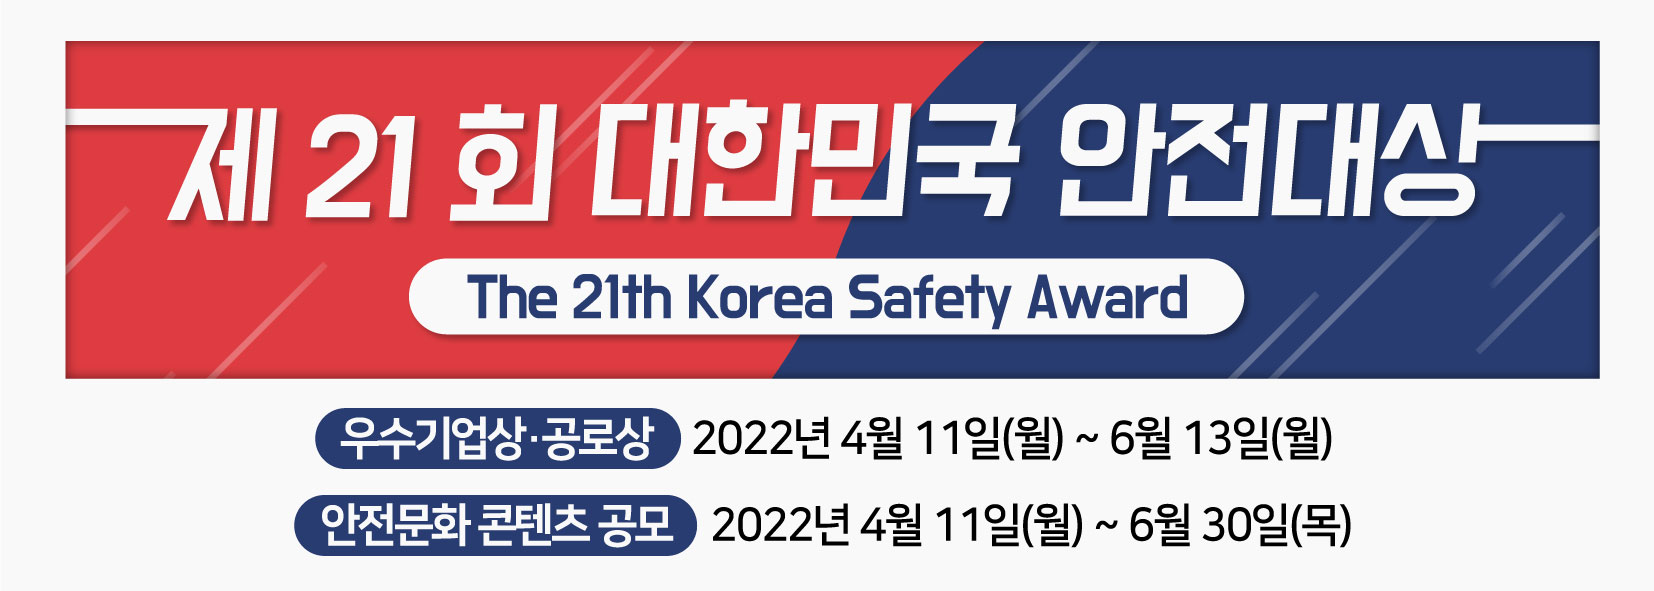 제21회 대한민국 안전대상